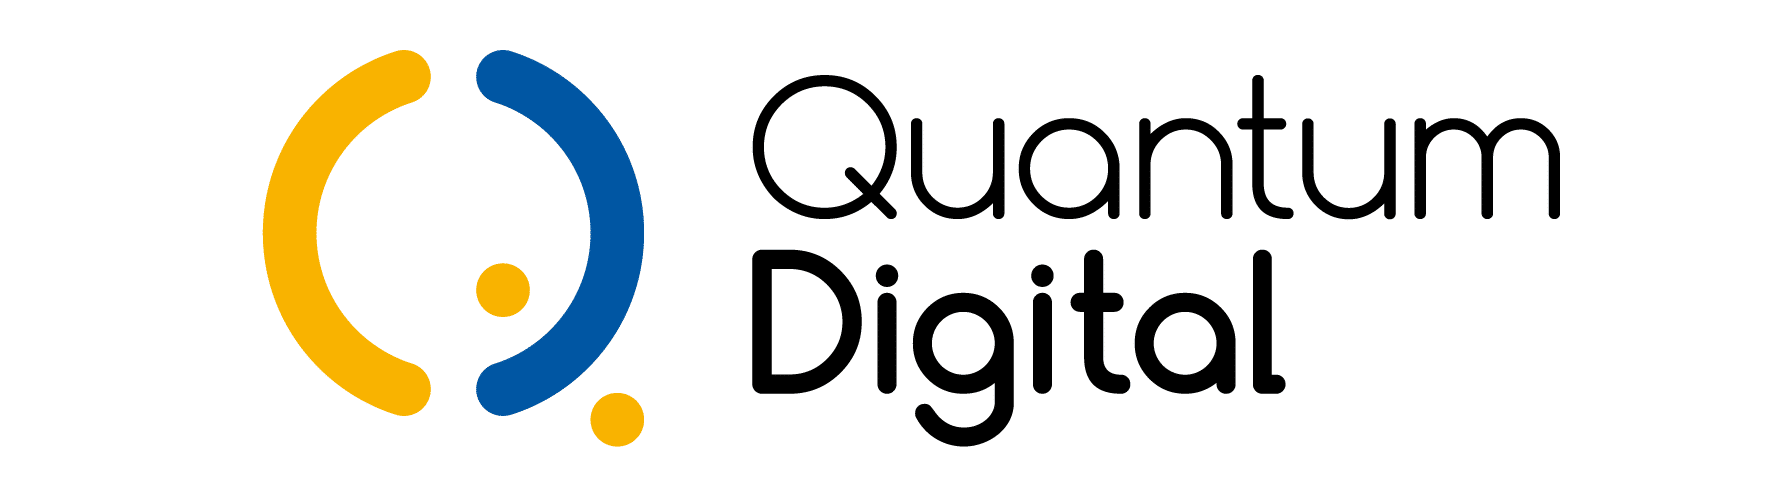 QuantumDigital-Logo